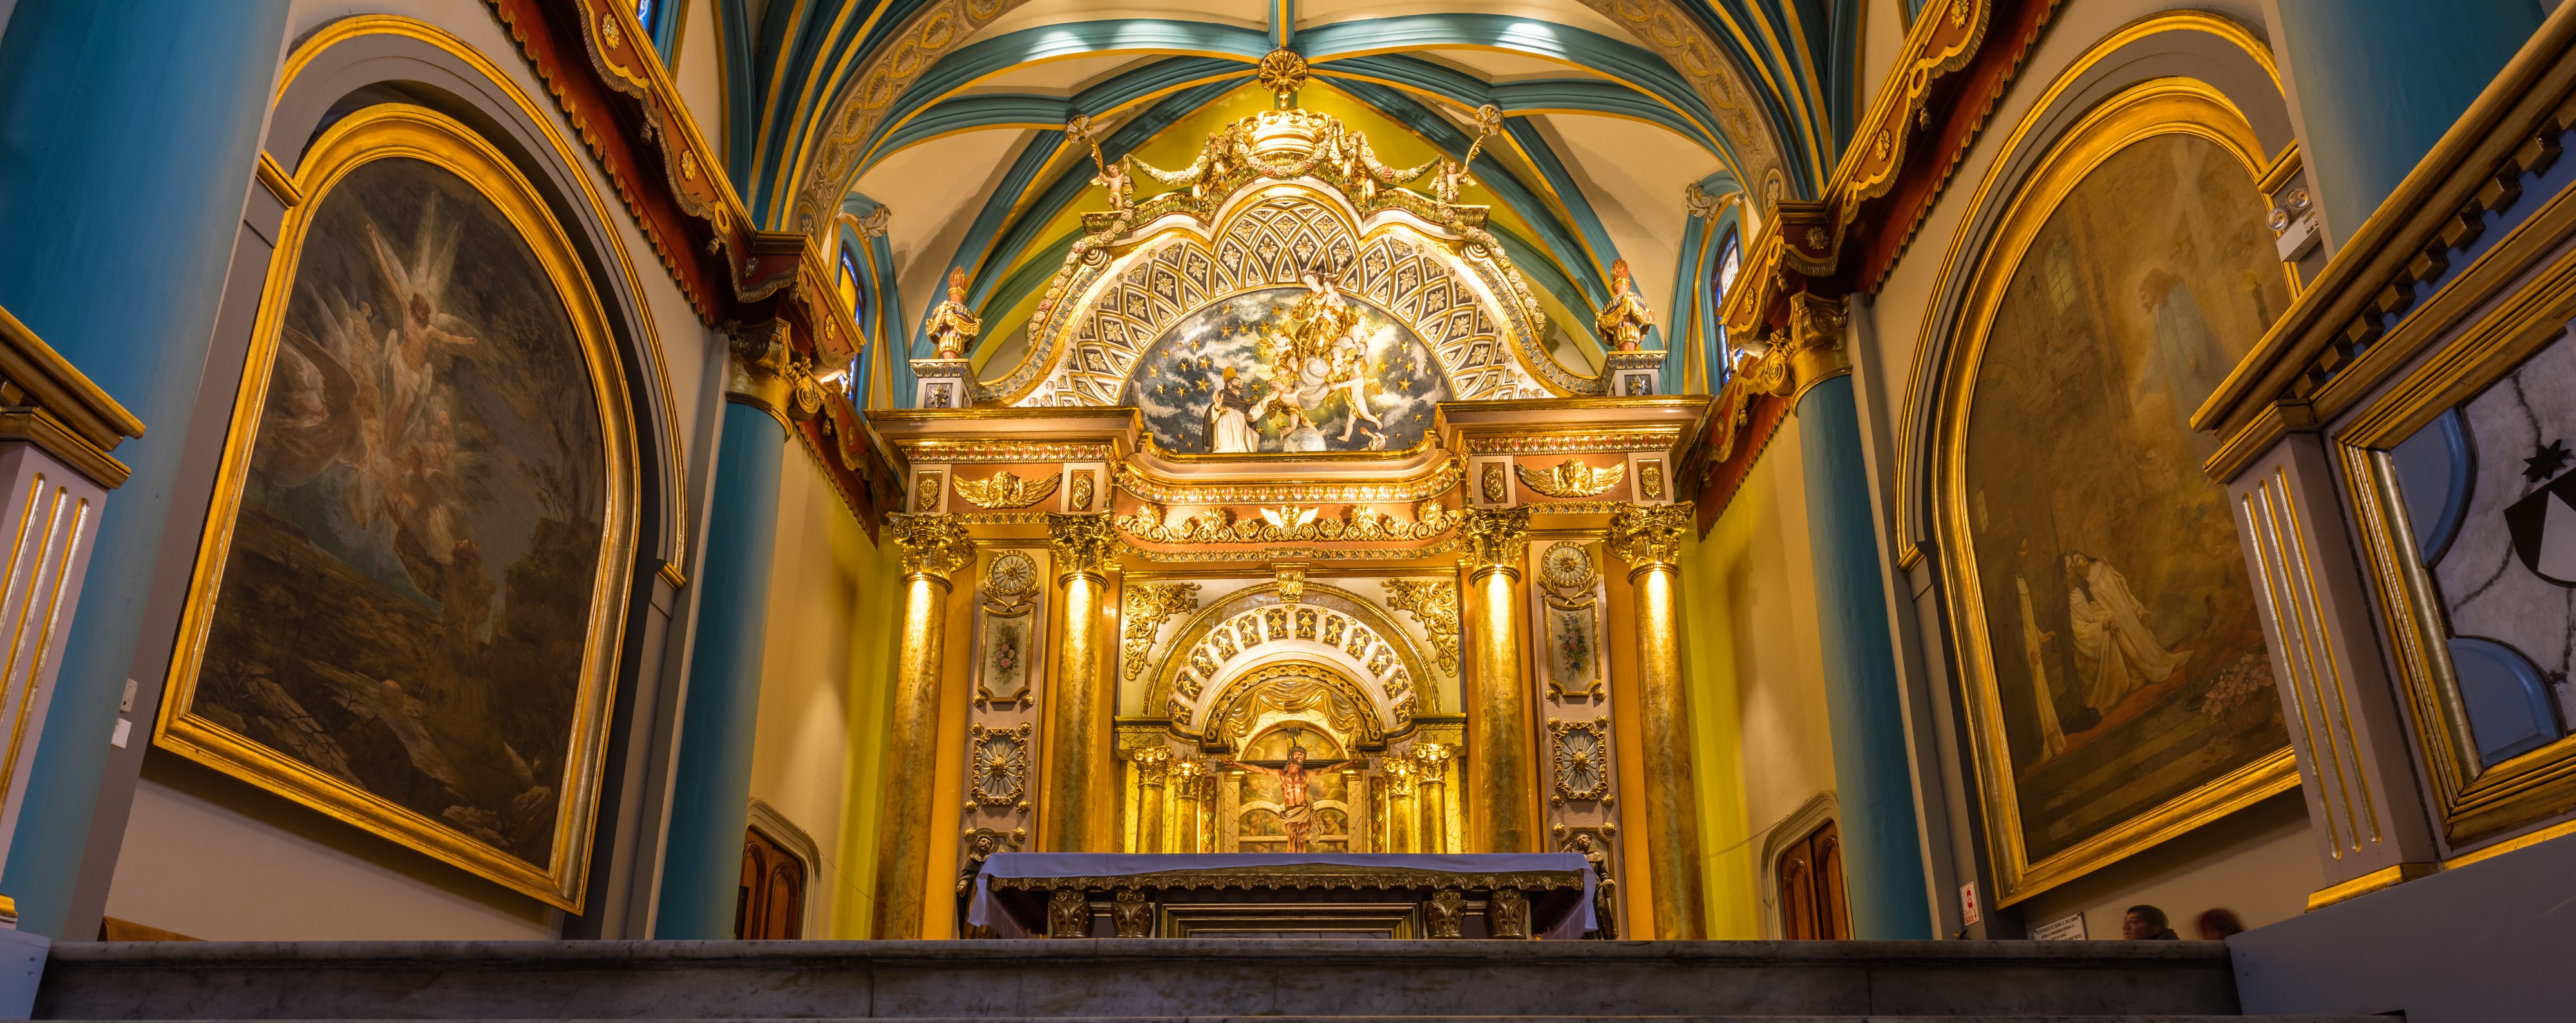 Iglesia de Santo Domingo, Lima, Perú, 2015-07-28, DD 55-57 HDR